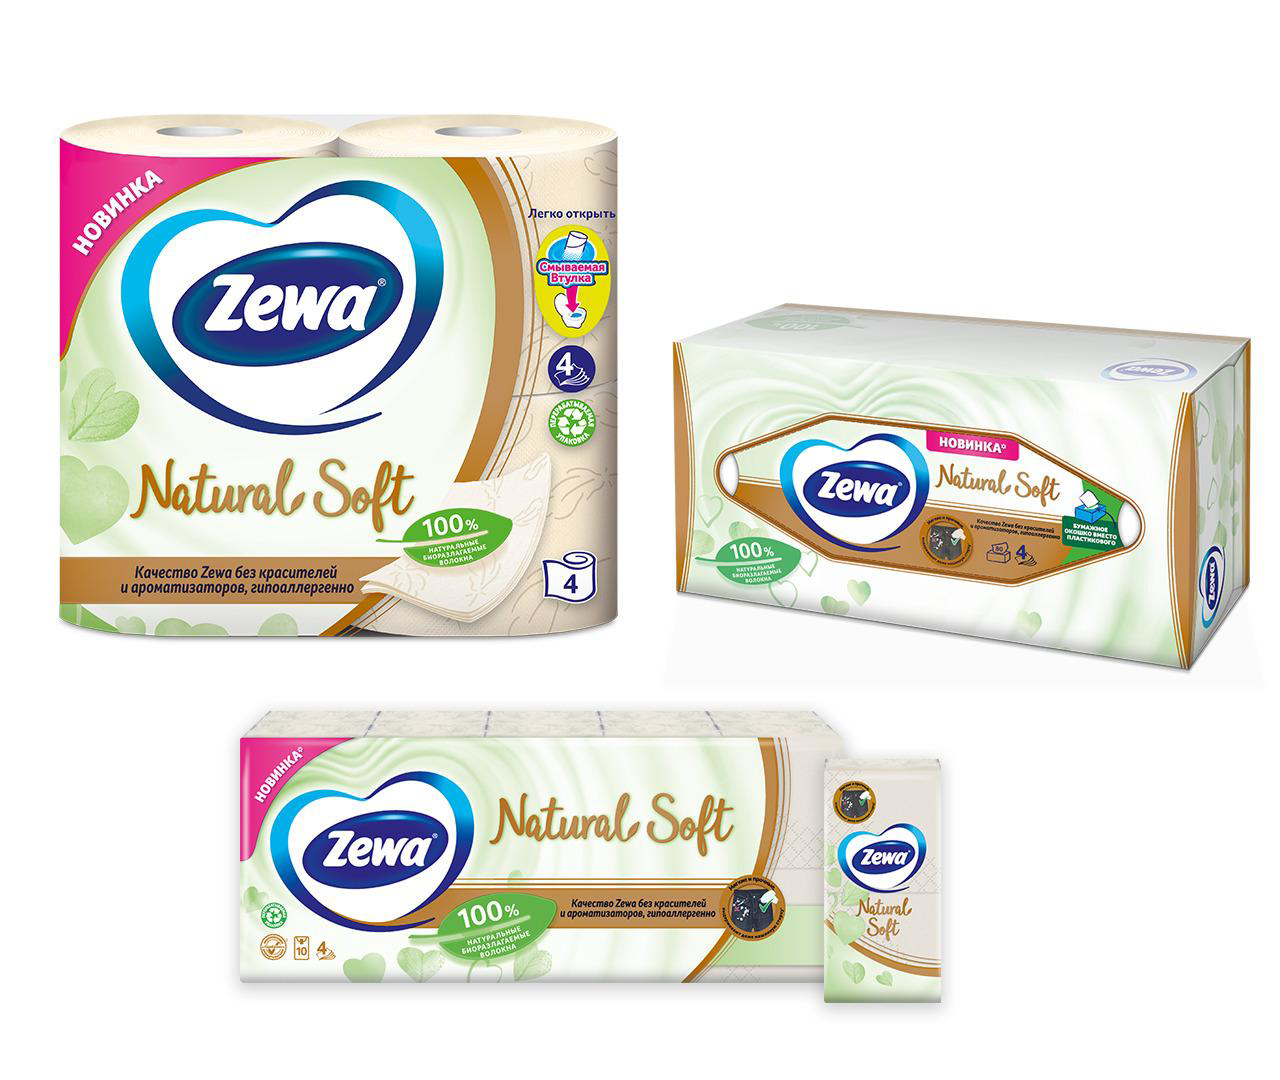 Zewa natural Soft салфетки бумажные косметические 80шт. Zewa Soft 80 шт 4 слоя. Zewa салфетки 4 слоя. Туалетная бумага Zewa natural Soft 4 слоя 4 рулона. Бумага naturals